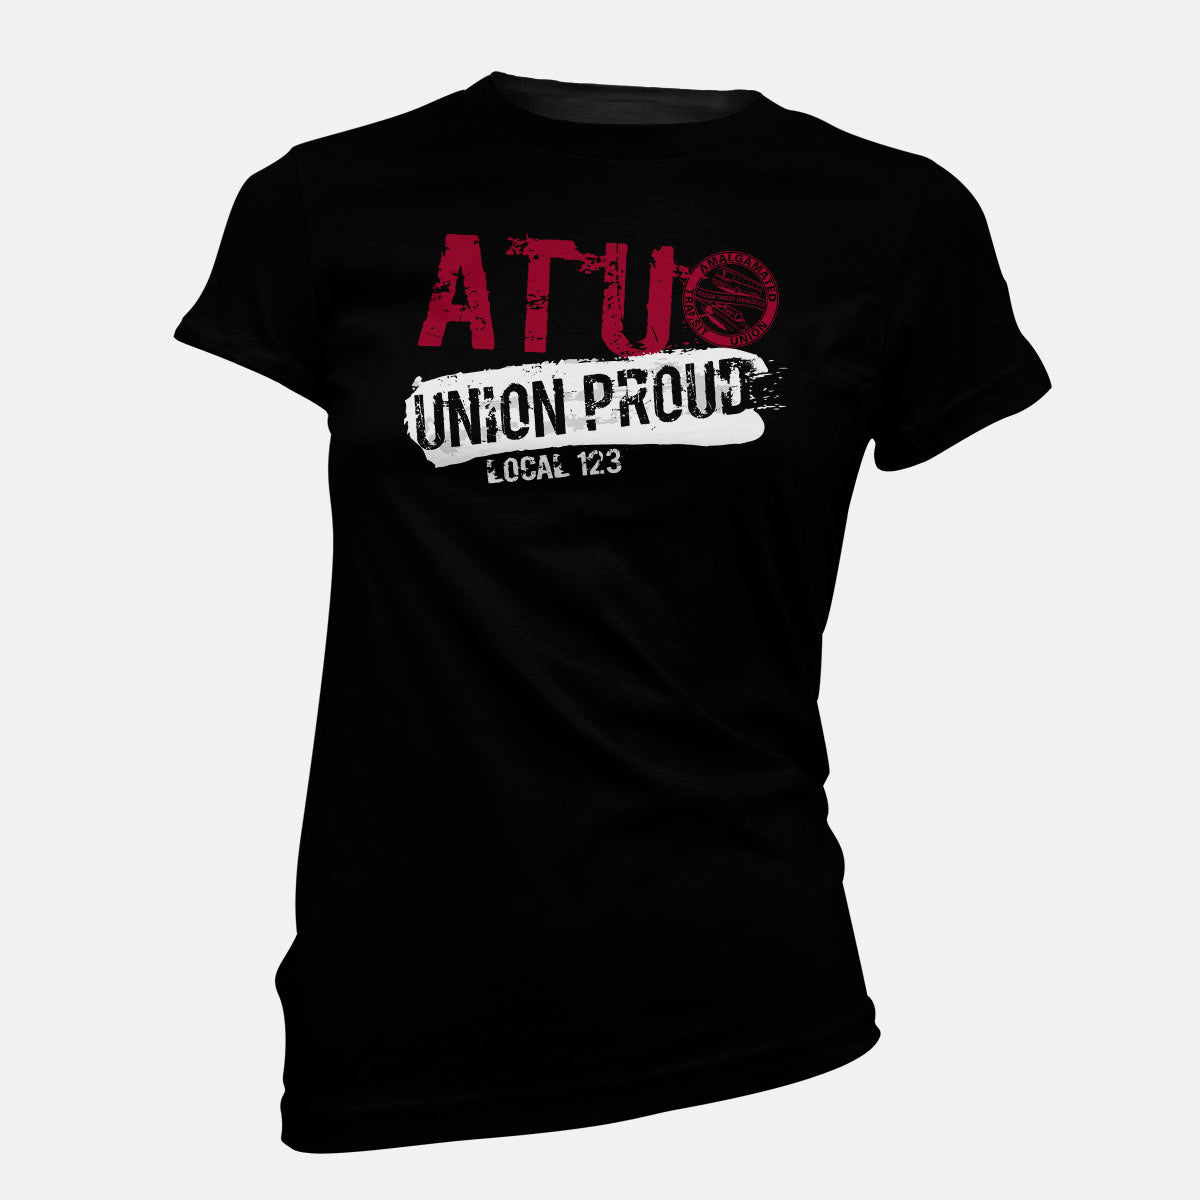 ATU Union Proud Splatter Apparel